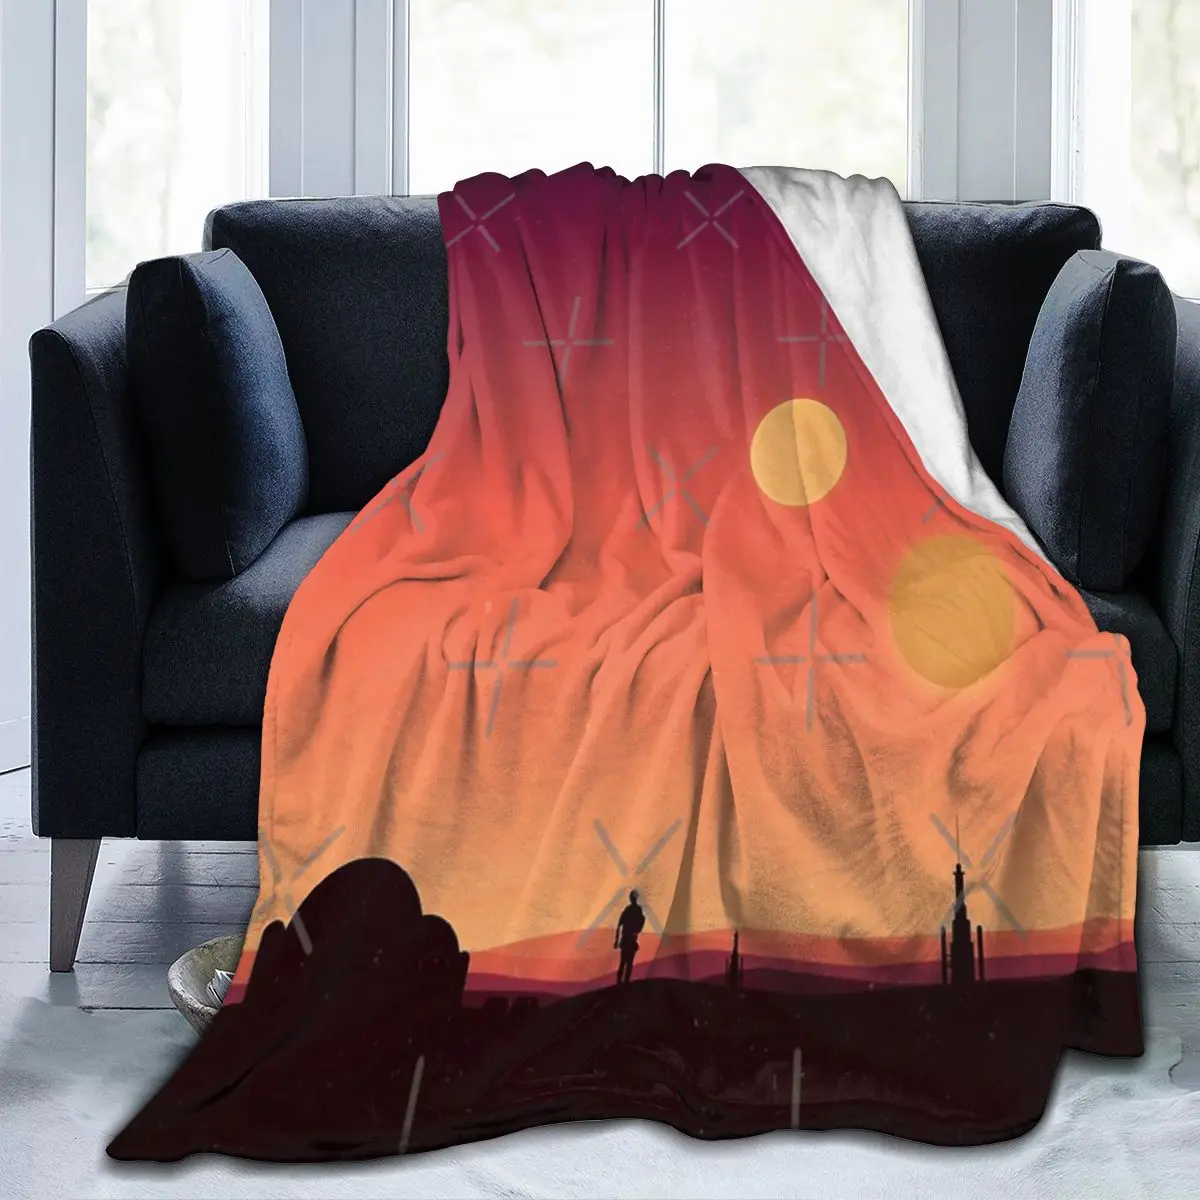 

Одеяло Tatooine, одеяло для лица, популярный подарок на специальный день рождения, разные размеры